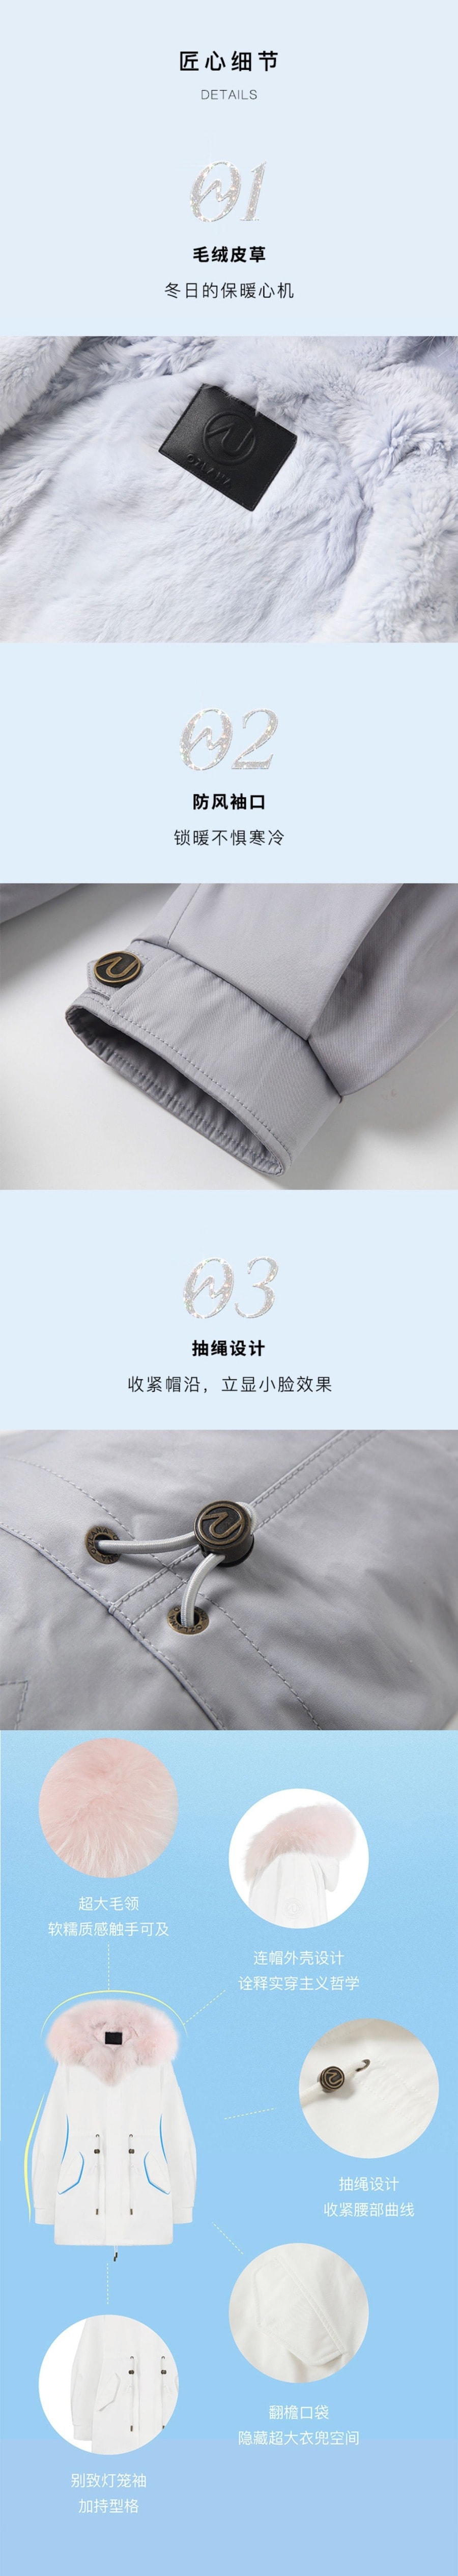 【中国直邮】【预售】OZLANA 冬季设计师款派克服 黑色廓形派克+奶白色獭兔/貉子毛 发货需5-15工作日